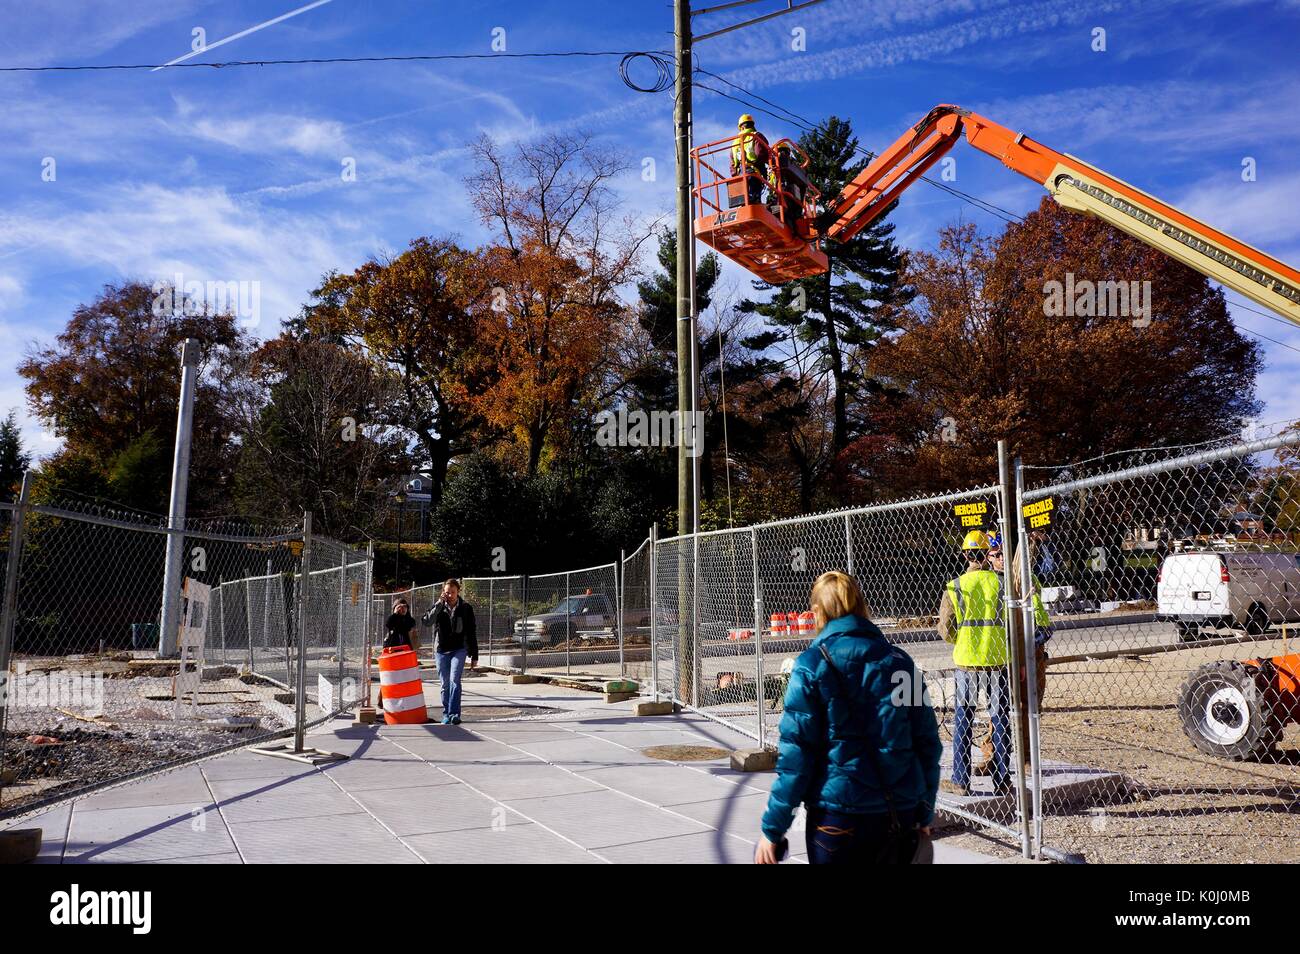 Studenti del college cross charles street, dove la costruzione è stato fatto per migliorare la zona per pedoni e conducenti, dall'Homewood campus della Johns Hopkins University di Baltimore, Maryland, 2015. cortesia eric chen. Foto Stock